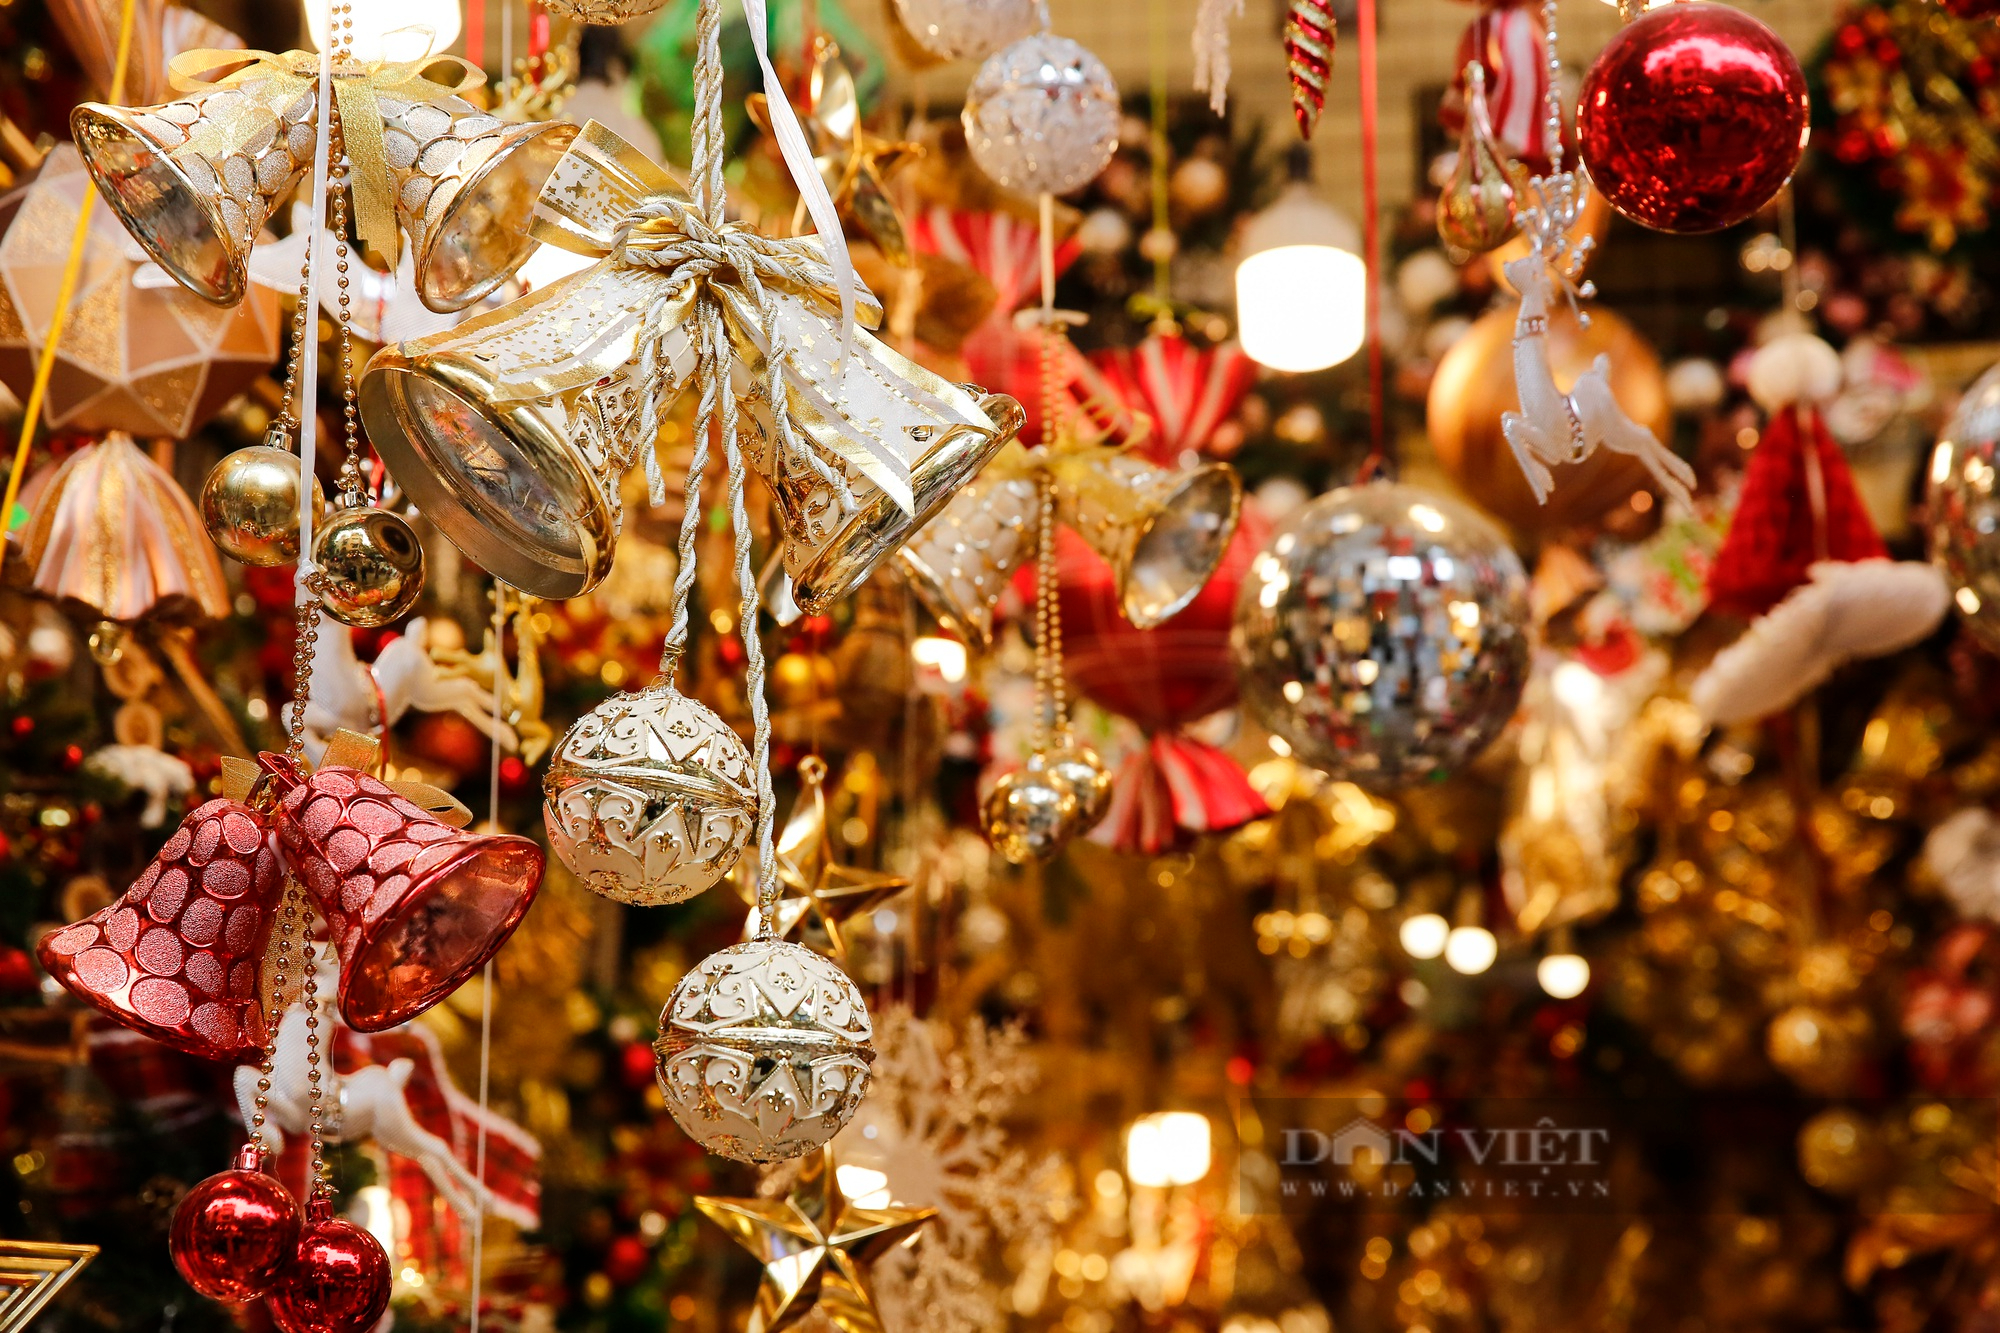 Hoa mắt trước &quot;rừng&quot; đồ trang trí Giáng sinh tại phố cổ Hà Nội - Ảnh 10.